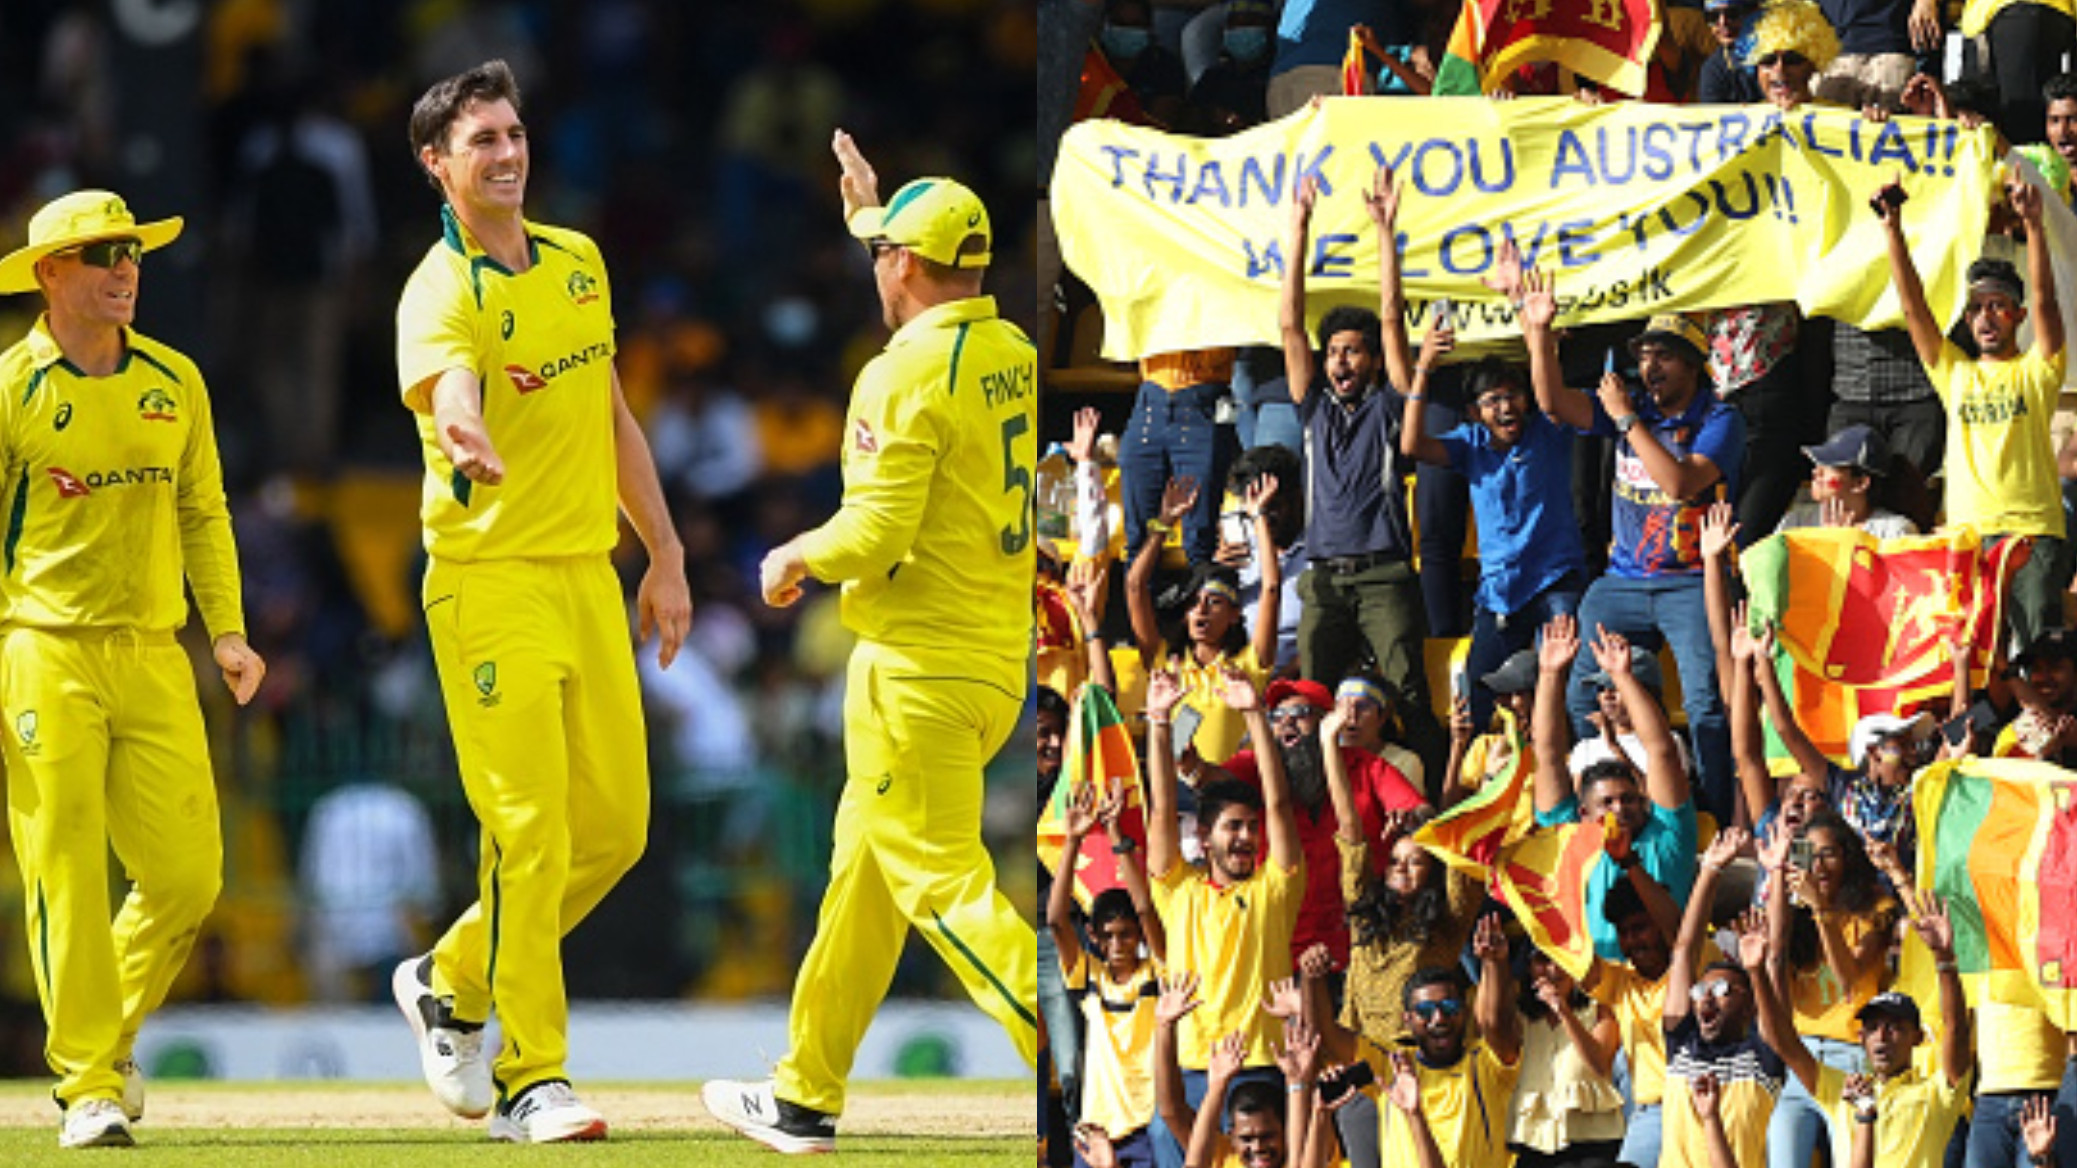 Australia men’s team to donate prize money from Sri Lanka tour to crisis-hit country's aid